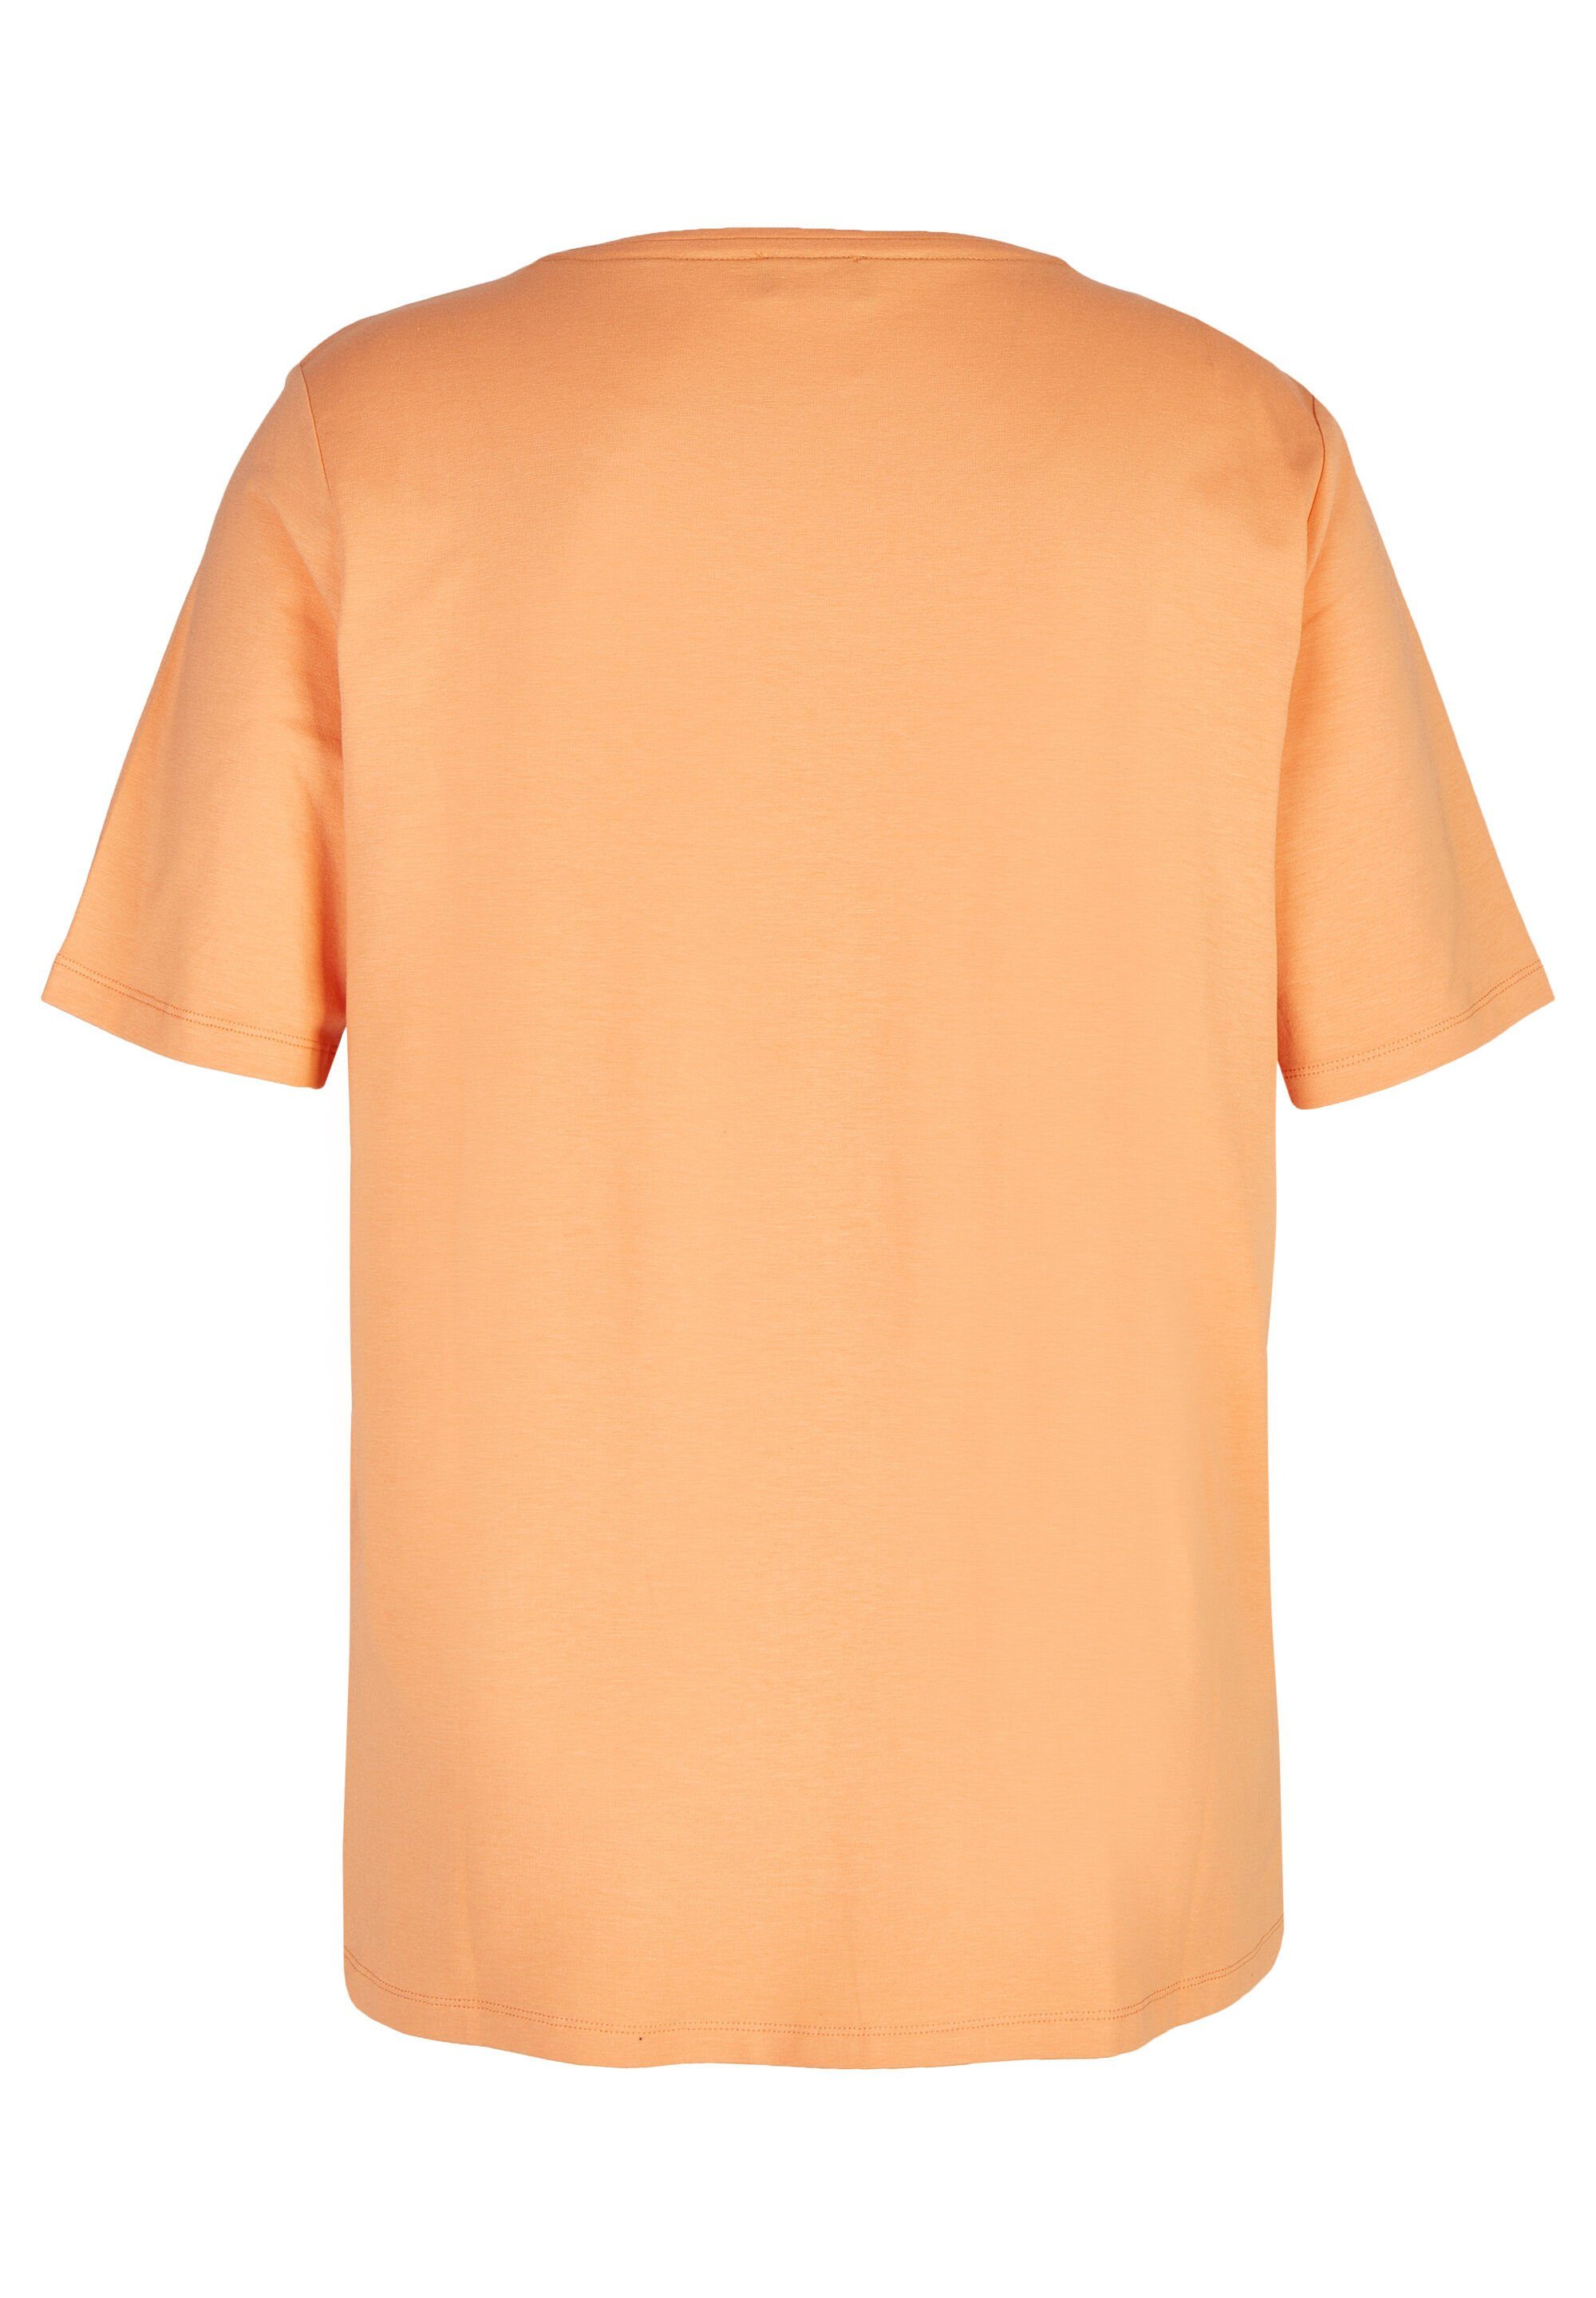 APPIA mandarin VIA DUE mit Rundhalsausschnitt Rundhalsshirt multicolor